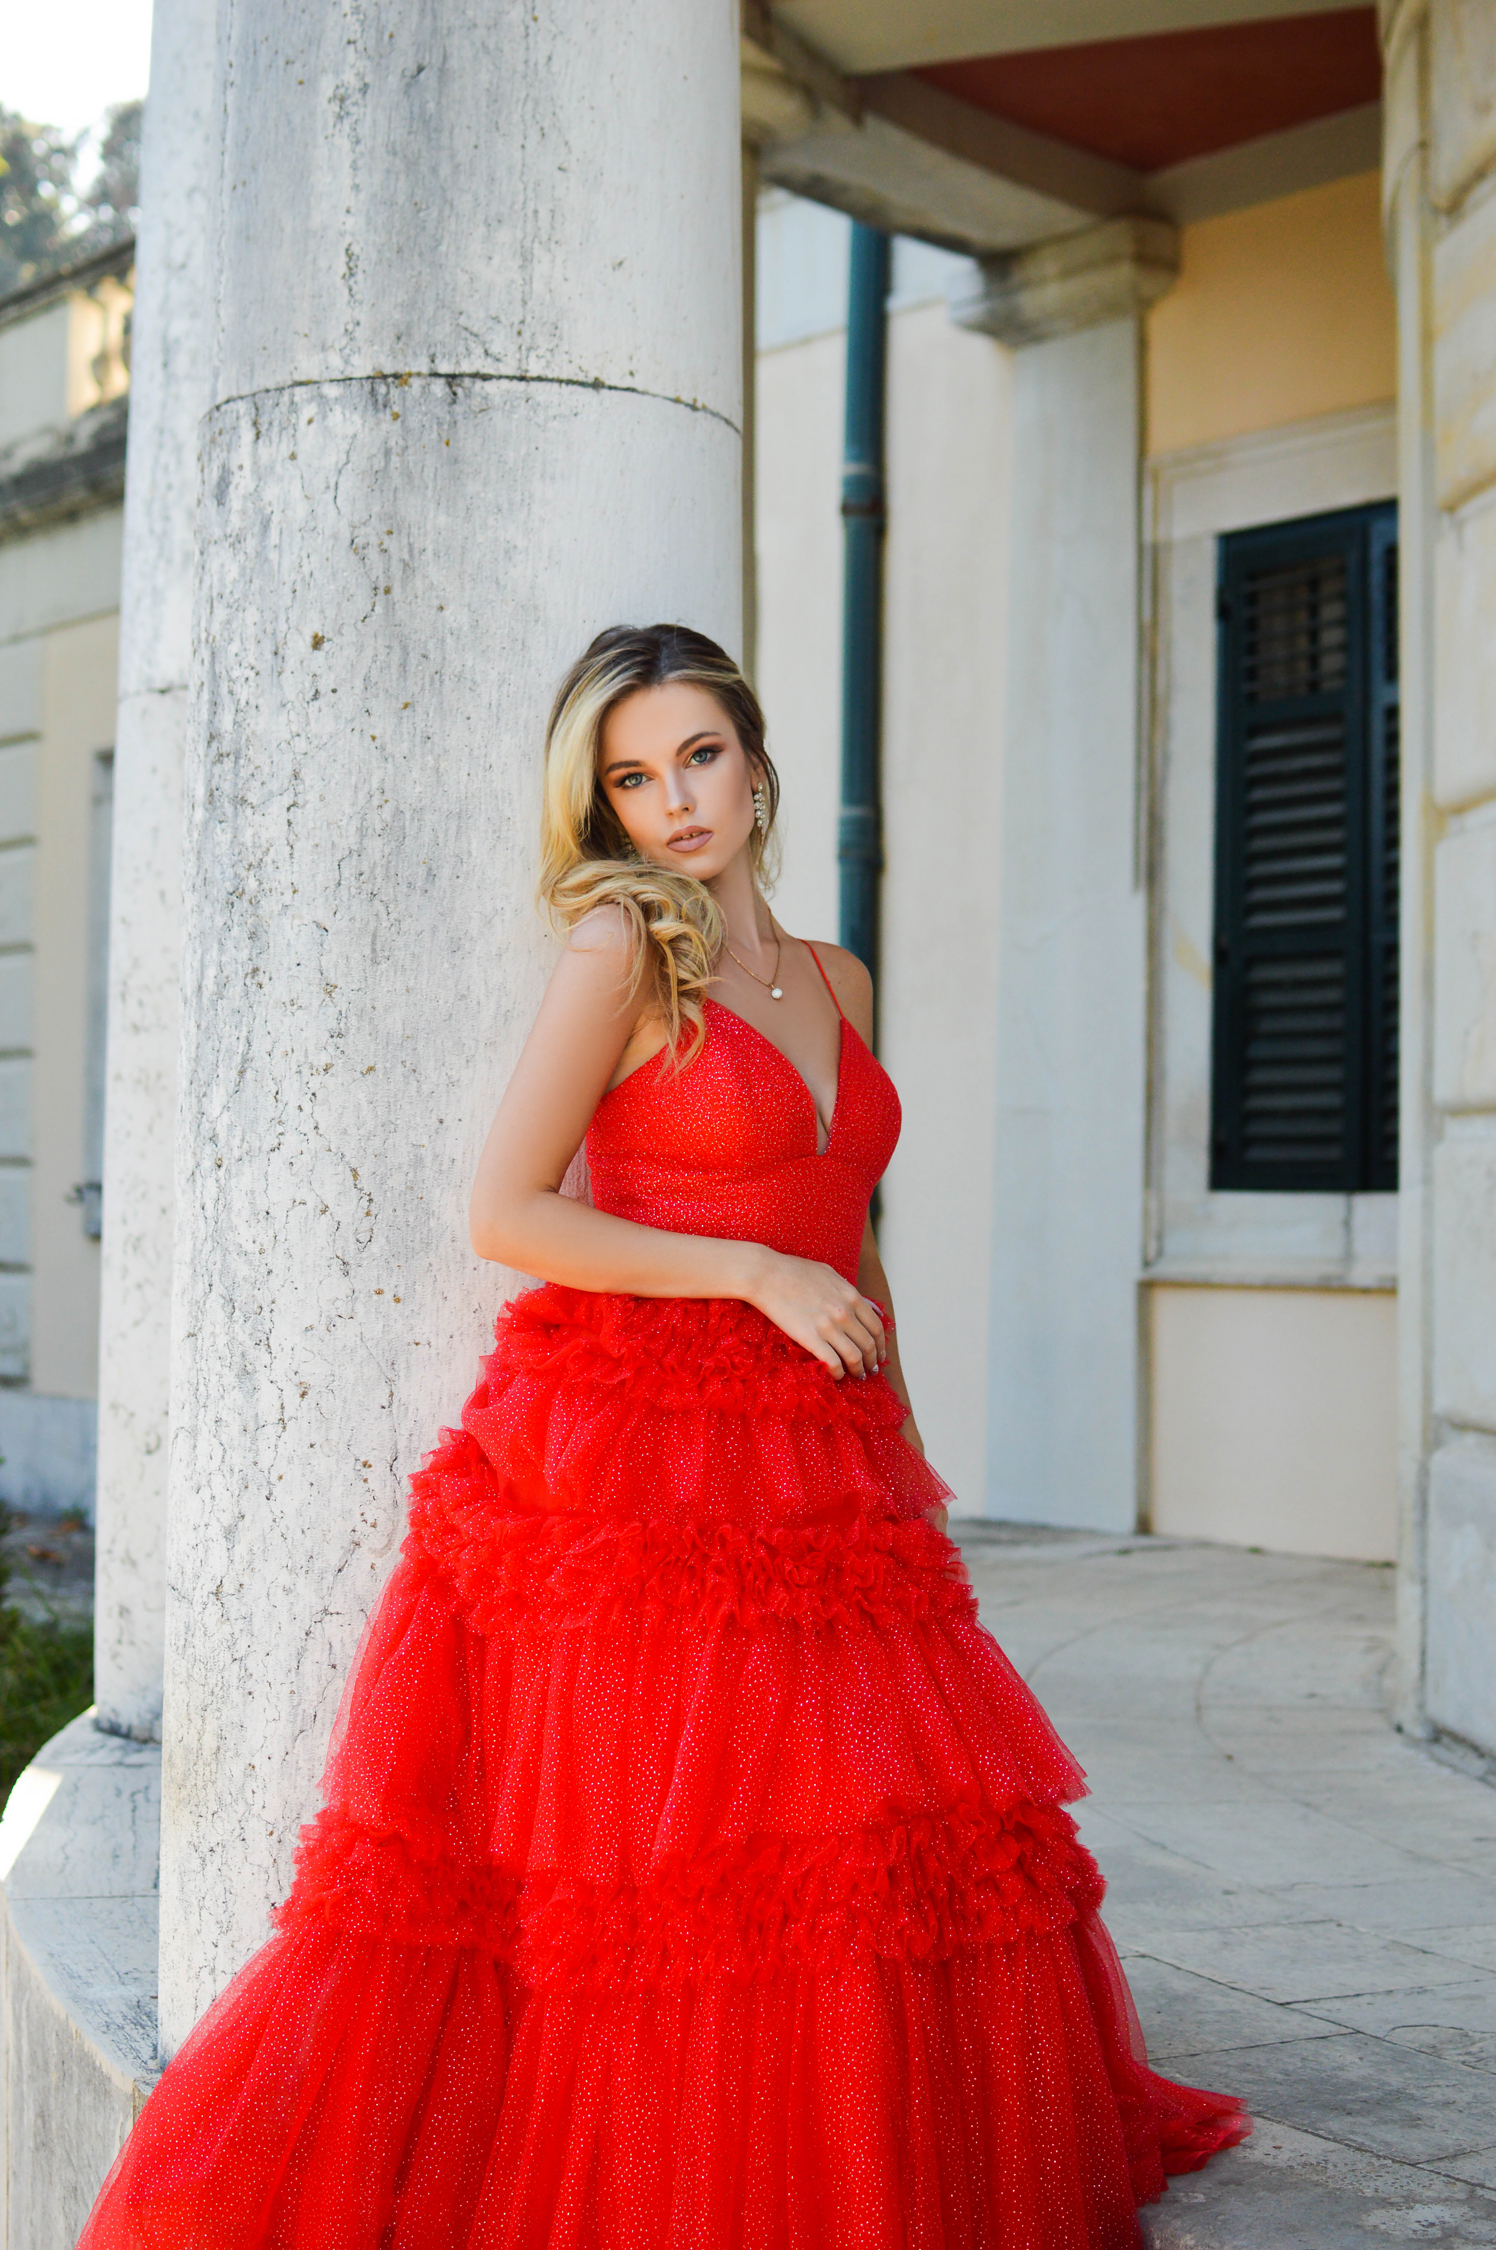 That Red Dress by Tamara Bellis